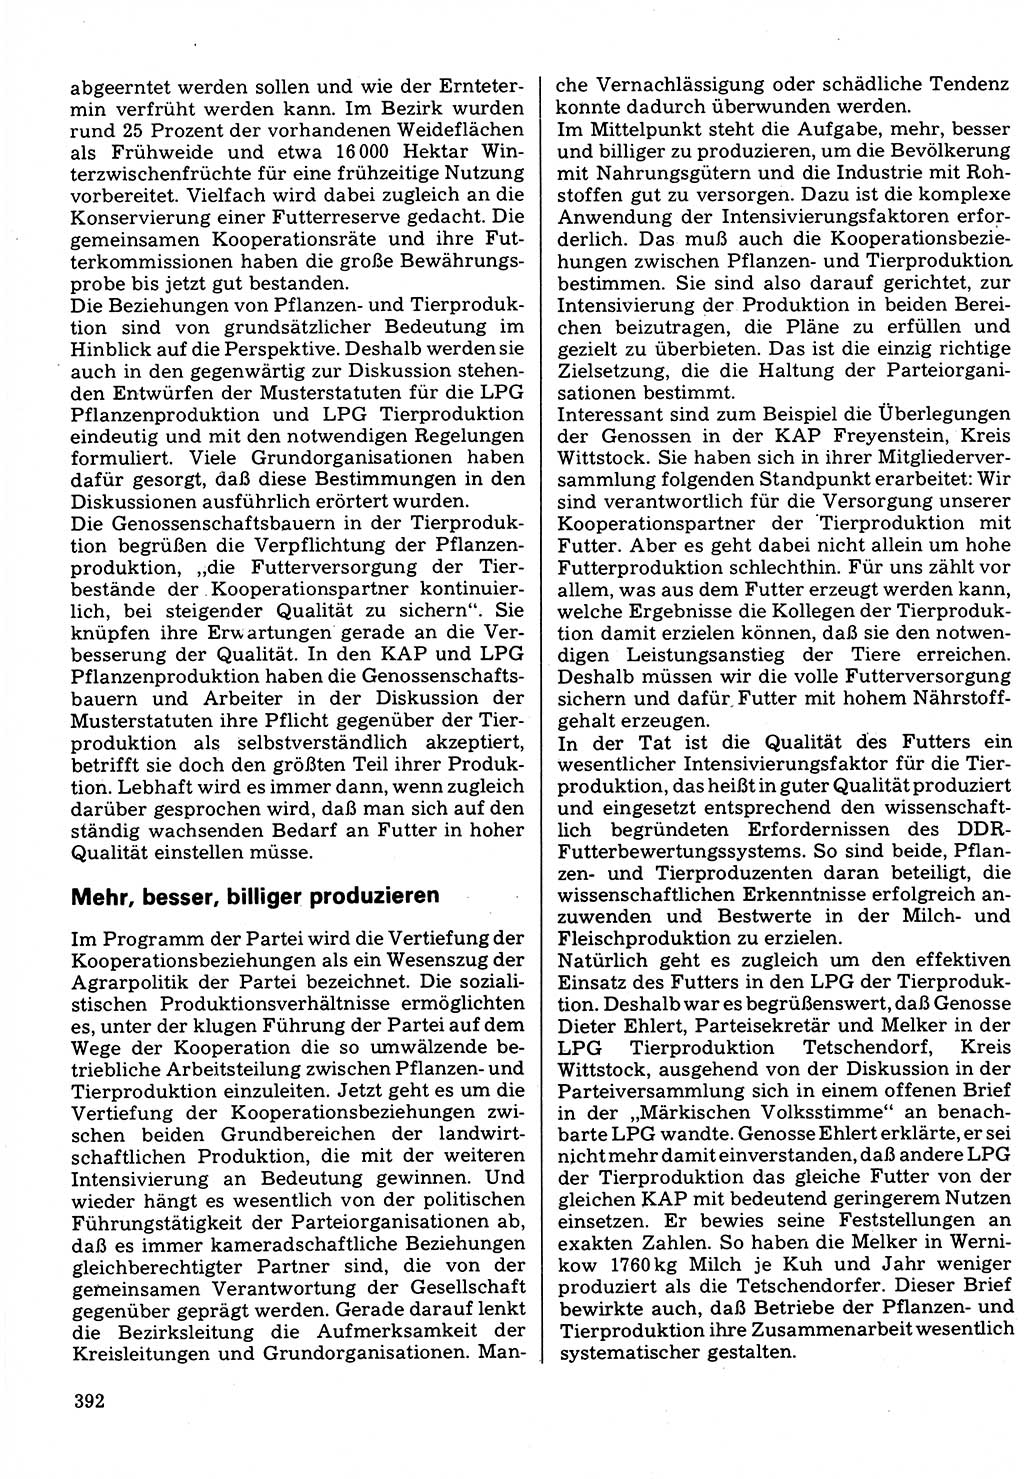 Neuer Weg (NW), Organ des Zentralkomitees (ZK) der SED (Sozialistische Einheitspartei Deutschlands) für Fragen des Parteilebens, 32. Jahrgang [Deutsche Demokratische Republik (DDR)] 1977, Seite 392 (NW ZK SED DDR 1977, S. 392)